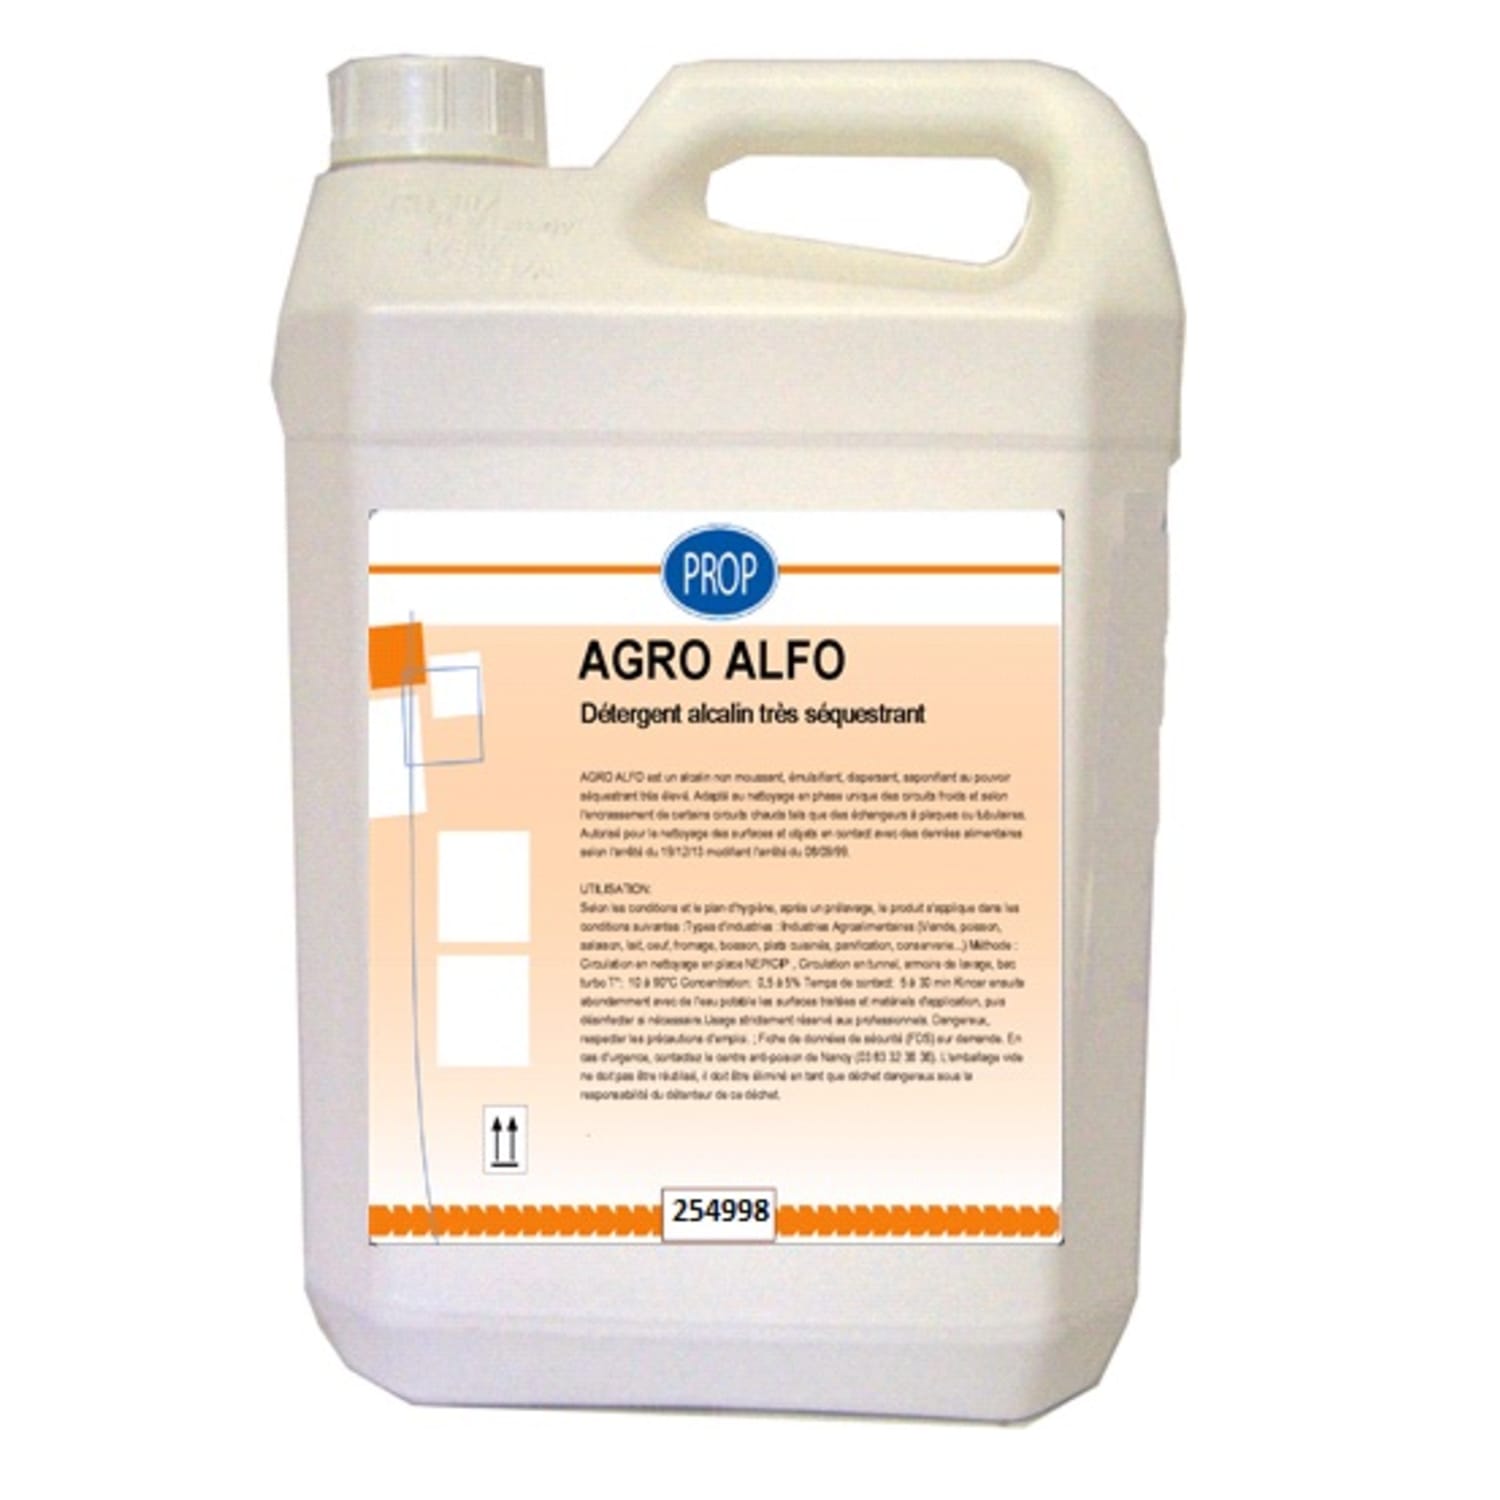 Alcalin fort non moussant très séquestrant - Agro Alfo photo du produit